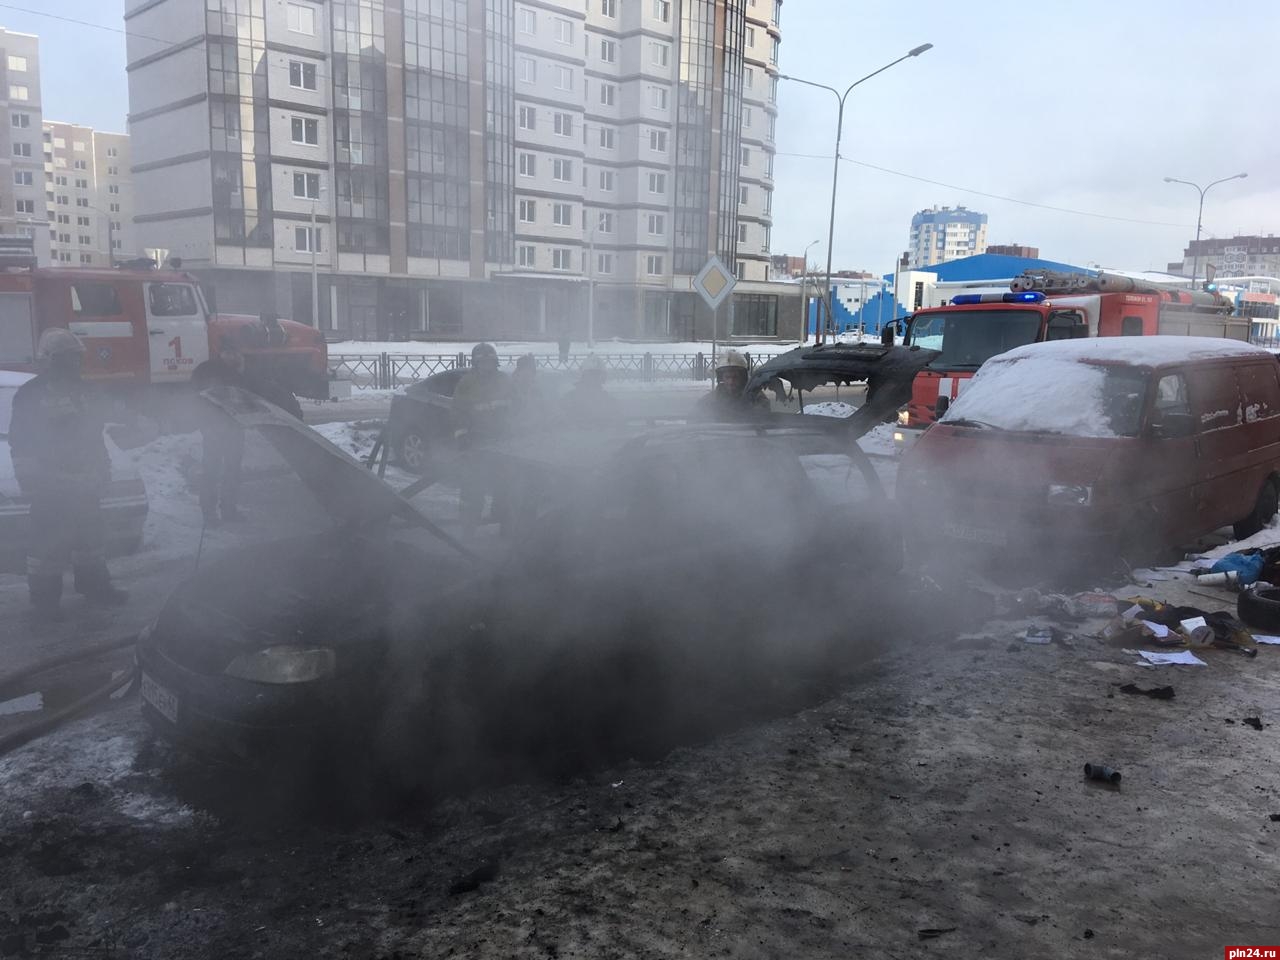 Опель сгорел. Пожар на Балтийской улице Москва.